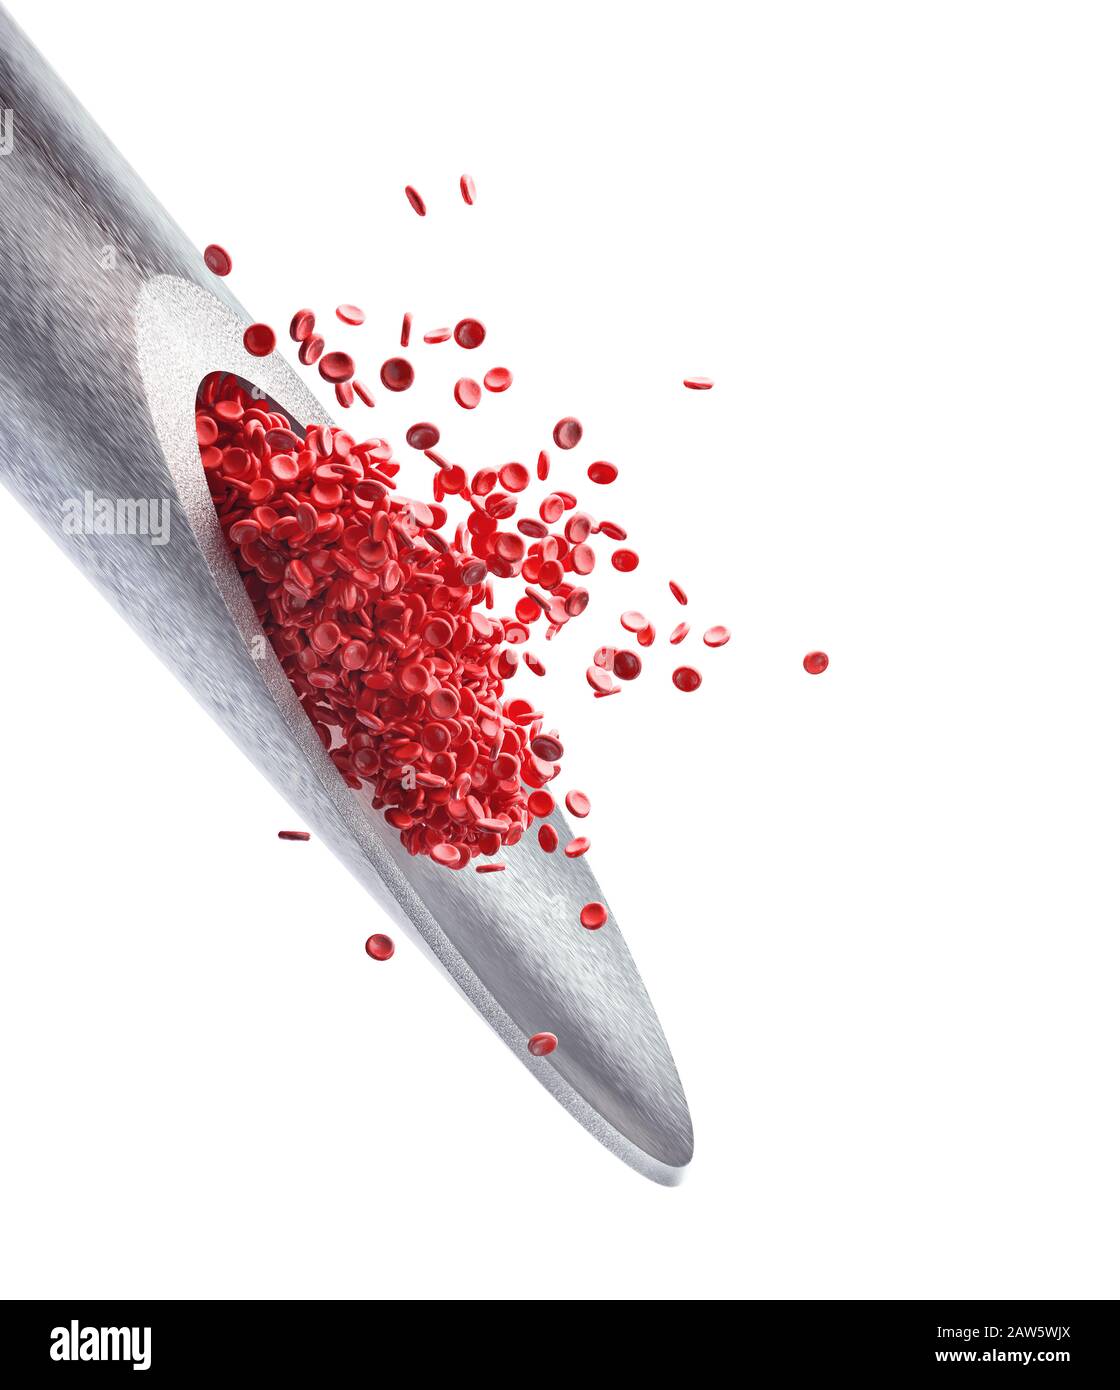 Aiguille d'injection avec globules rouges dépassant de la pointe. Illustration tridimensionnelle, image conceptuelle de la médecine et des études scientifiques. Le chemin d'écrêtage inclut Banque D'Images